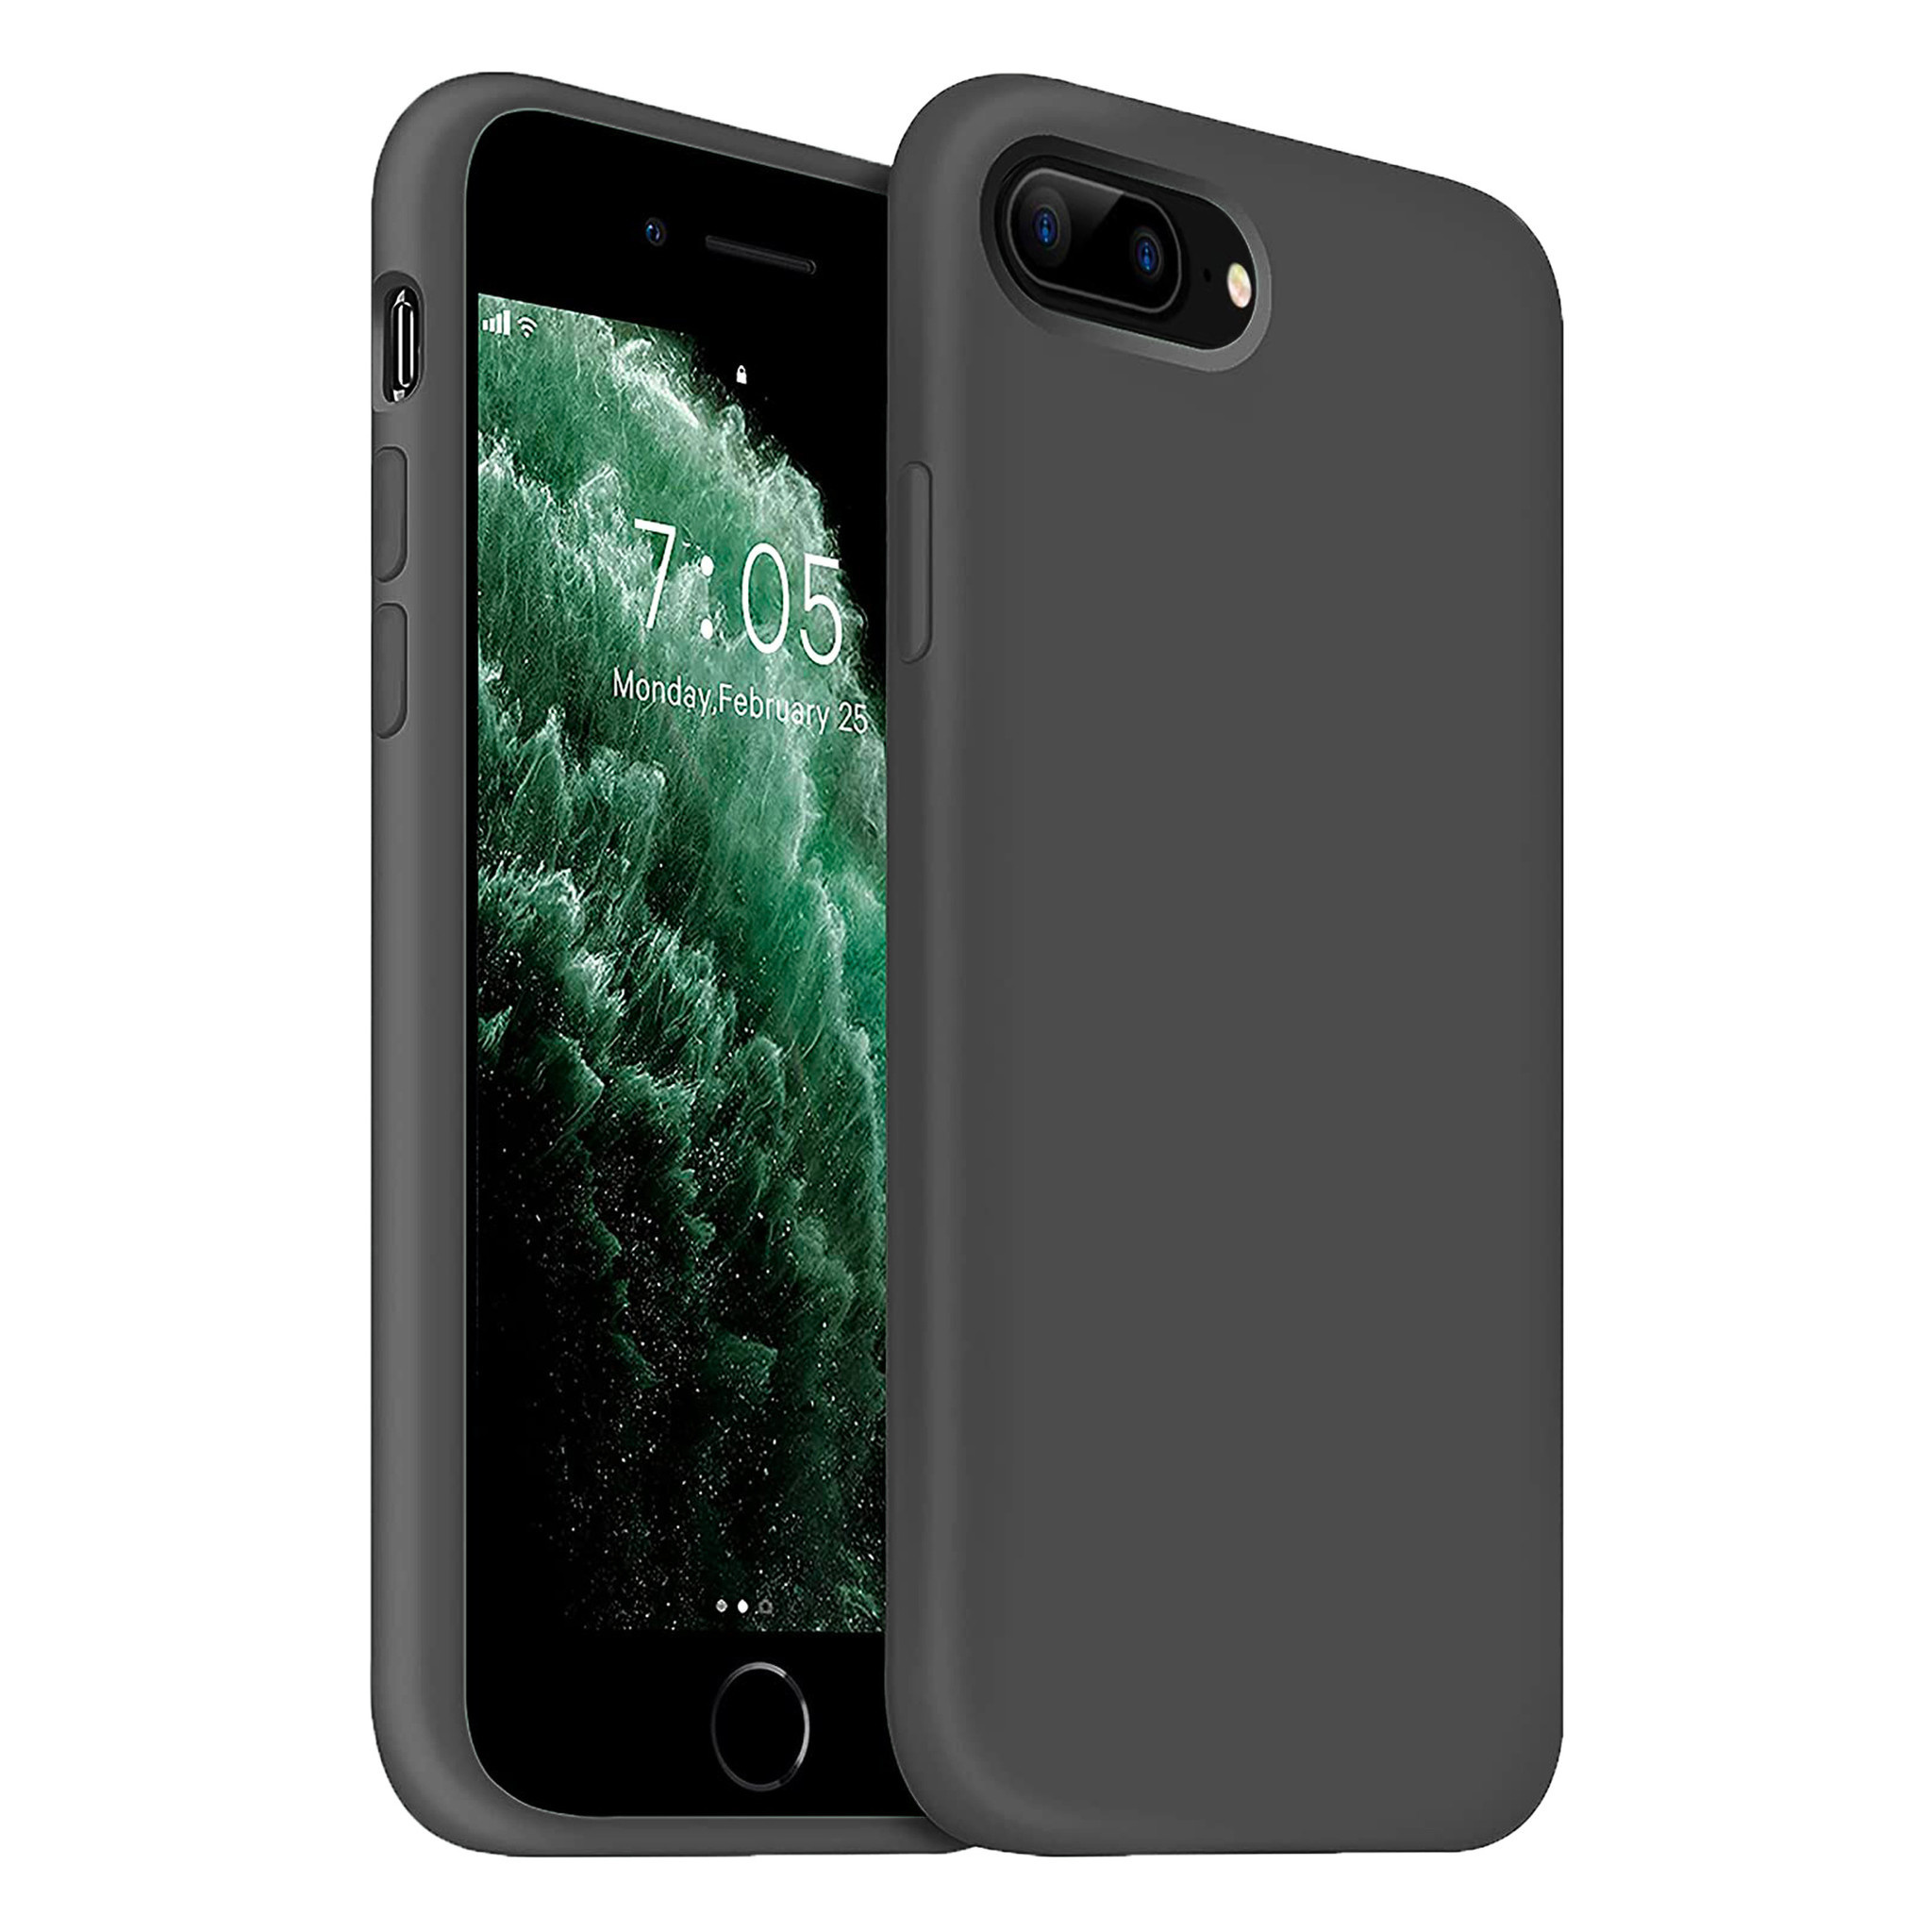 Funda de silicona de lujo iPhone 7/8 Plus (gris oscuro) - Funda